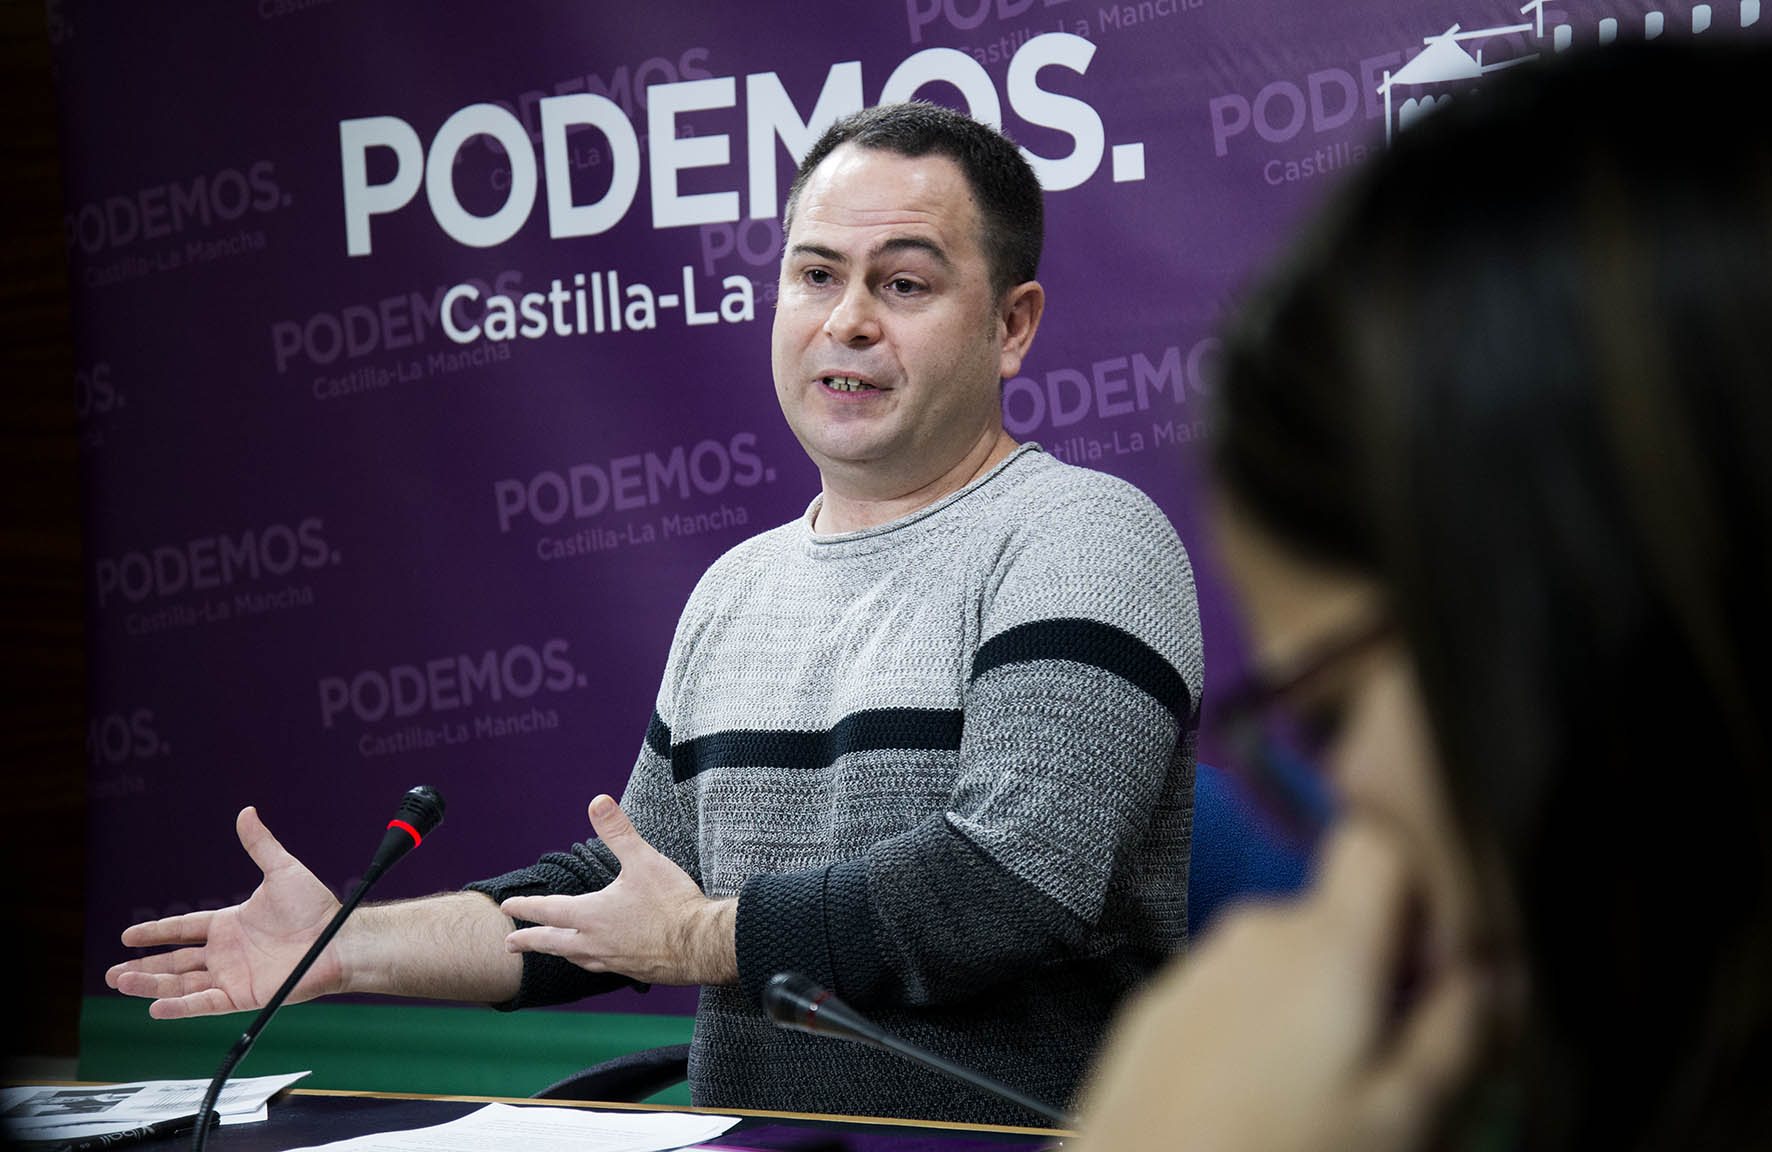 David Llorente, indignado con sus compañeros de Podemos, ha anunciado sus peticiones de apertura de expedientes